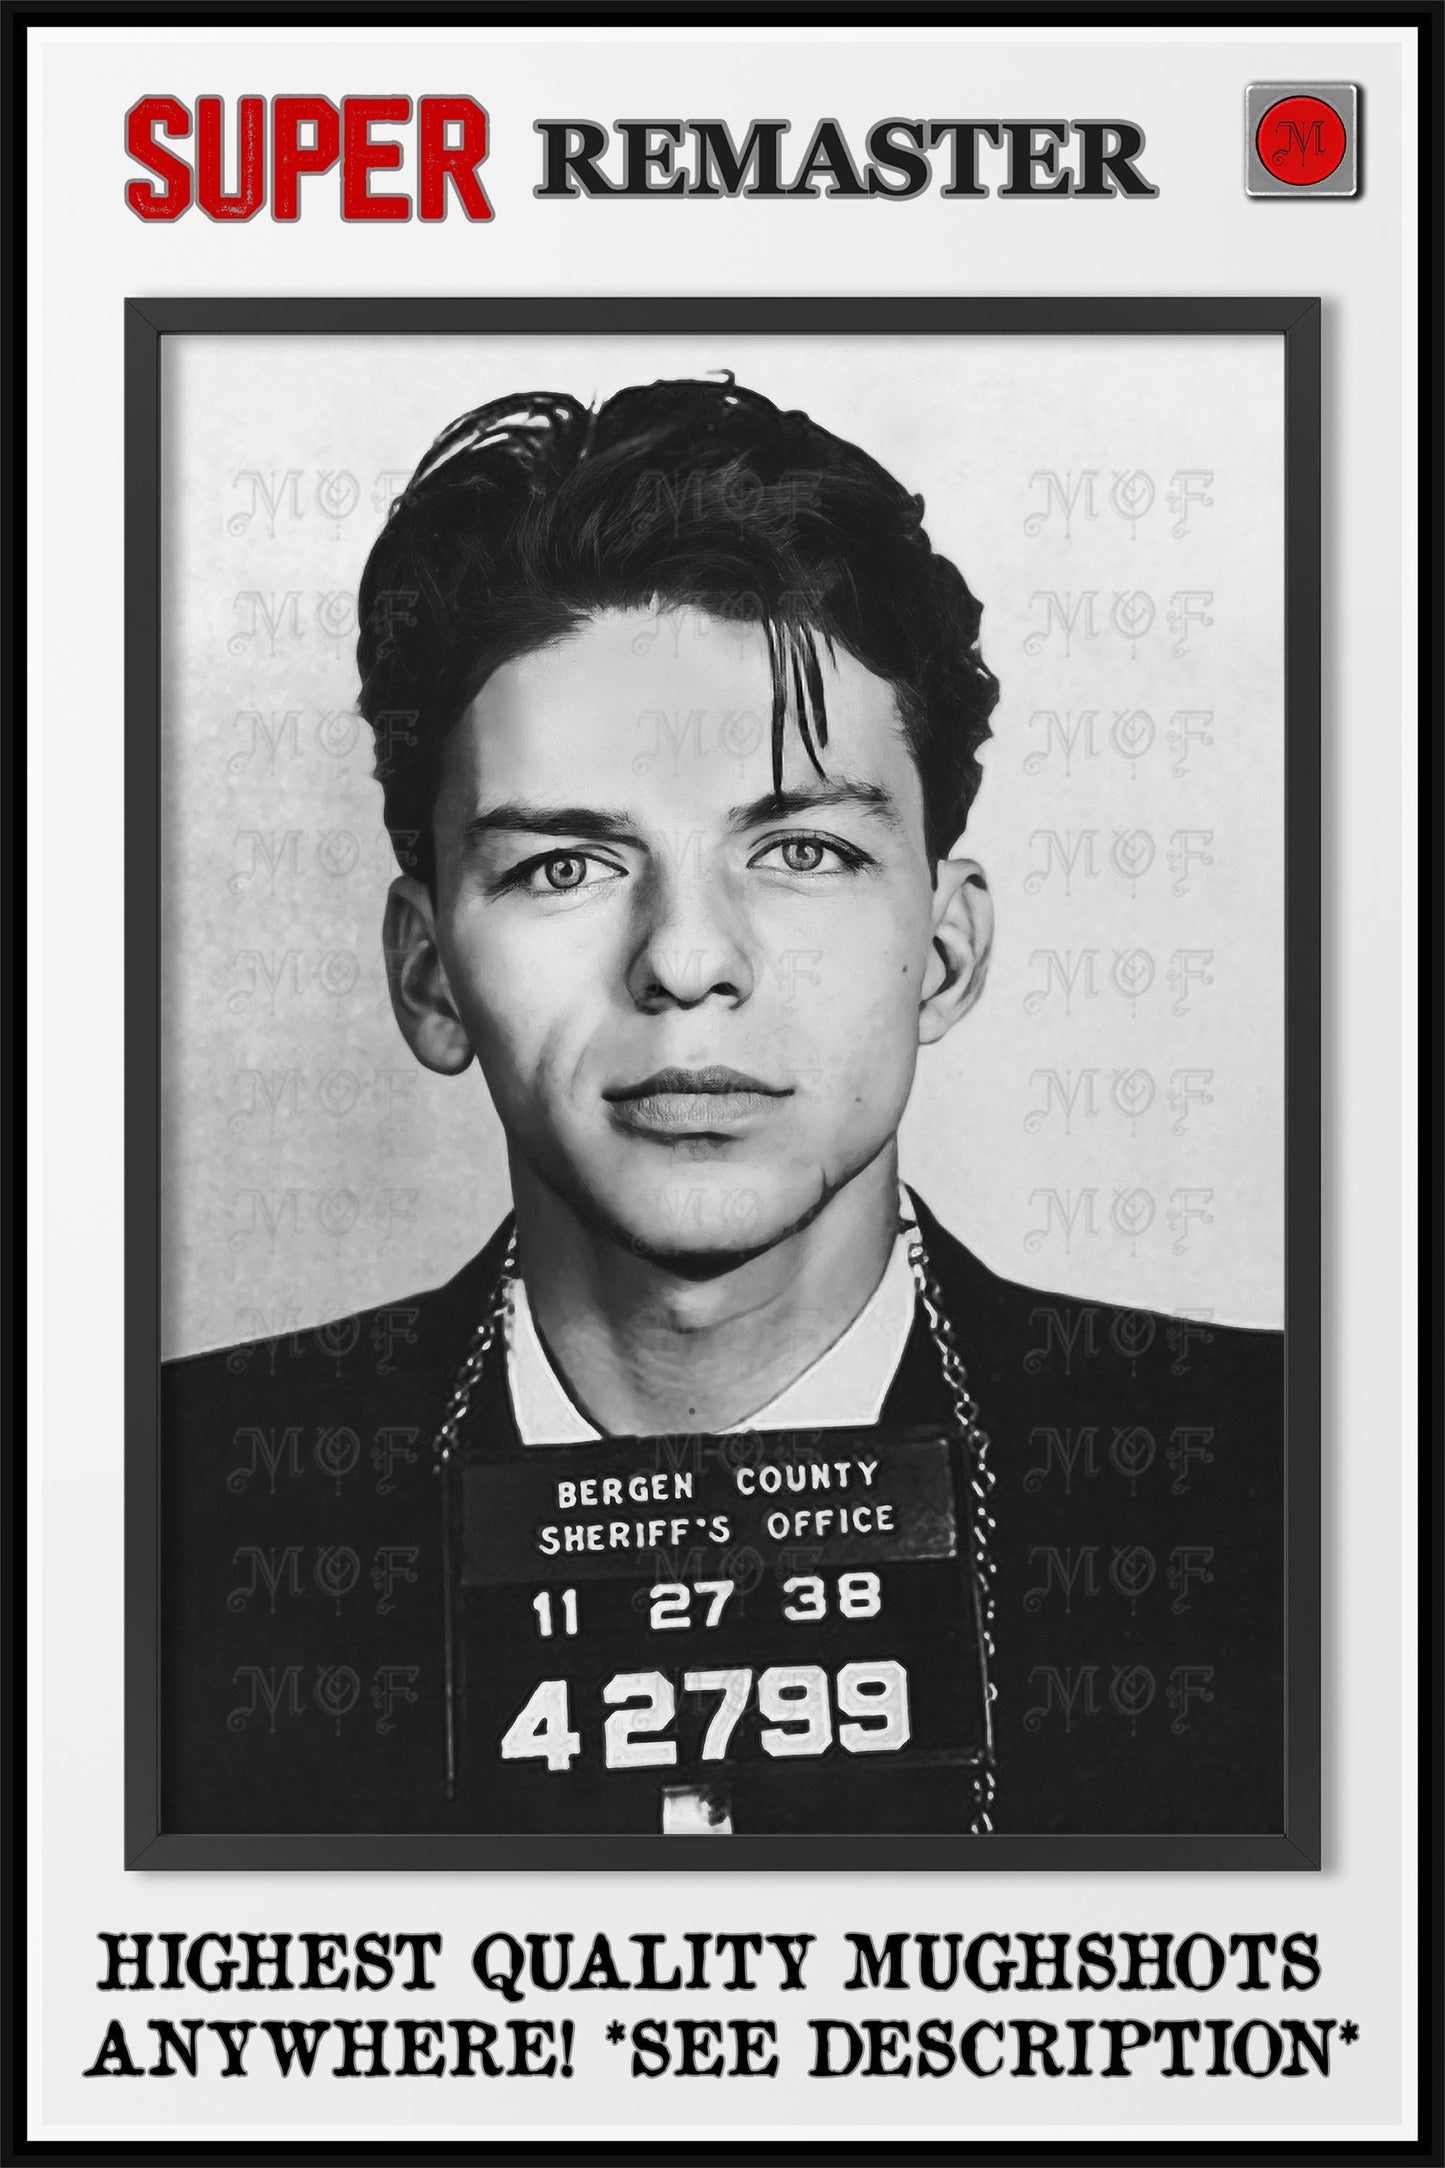 Frank Sinatra Mugshot Poster Celebrity REMASTERED #10 MUG